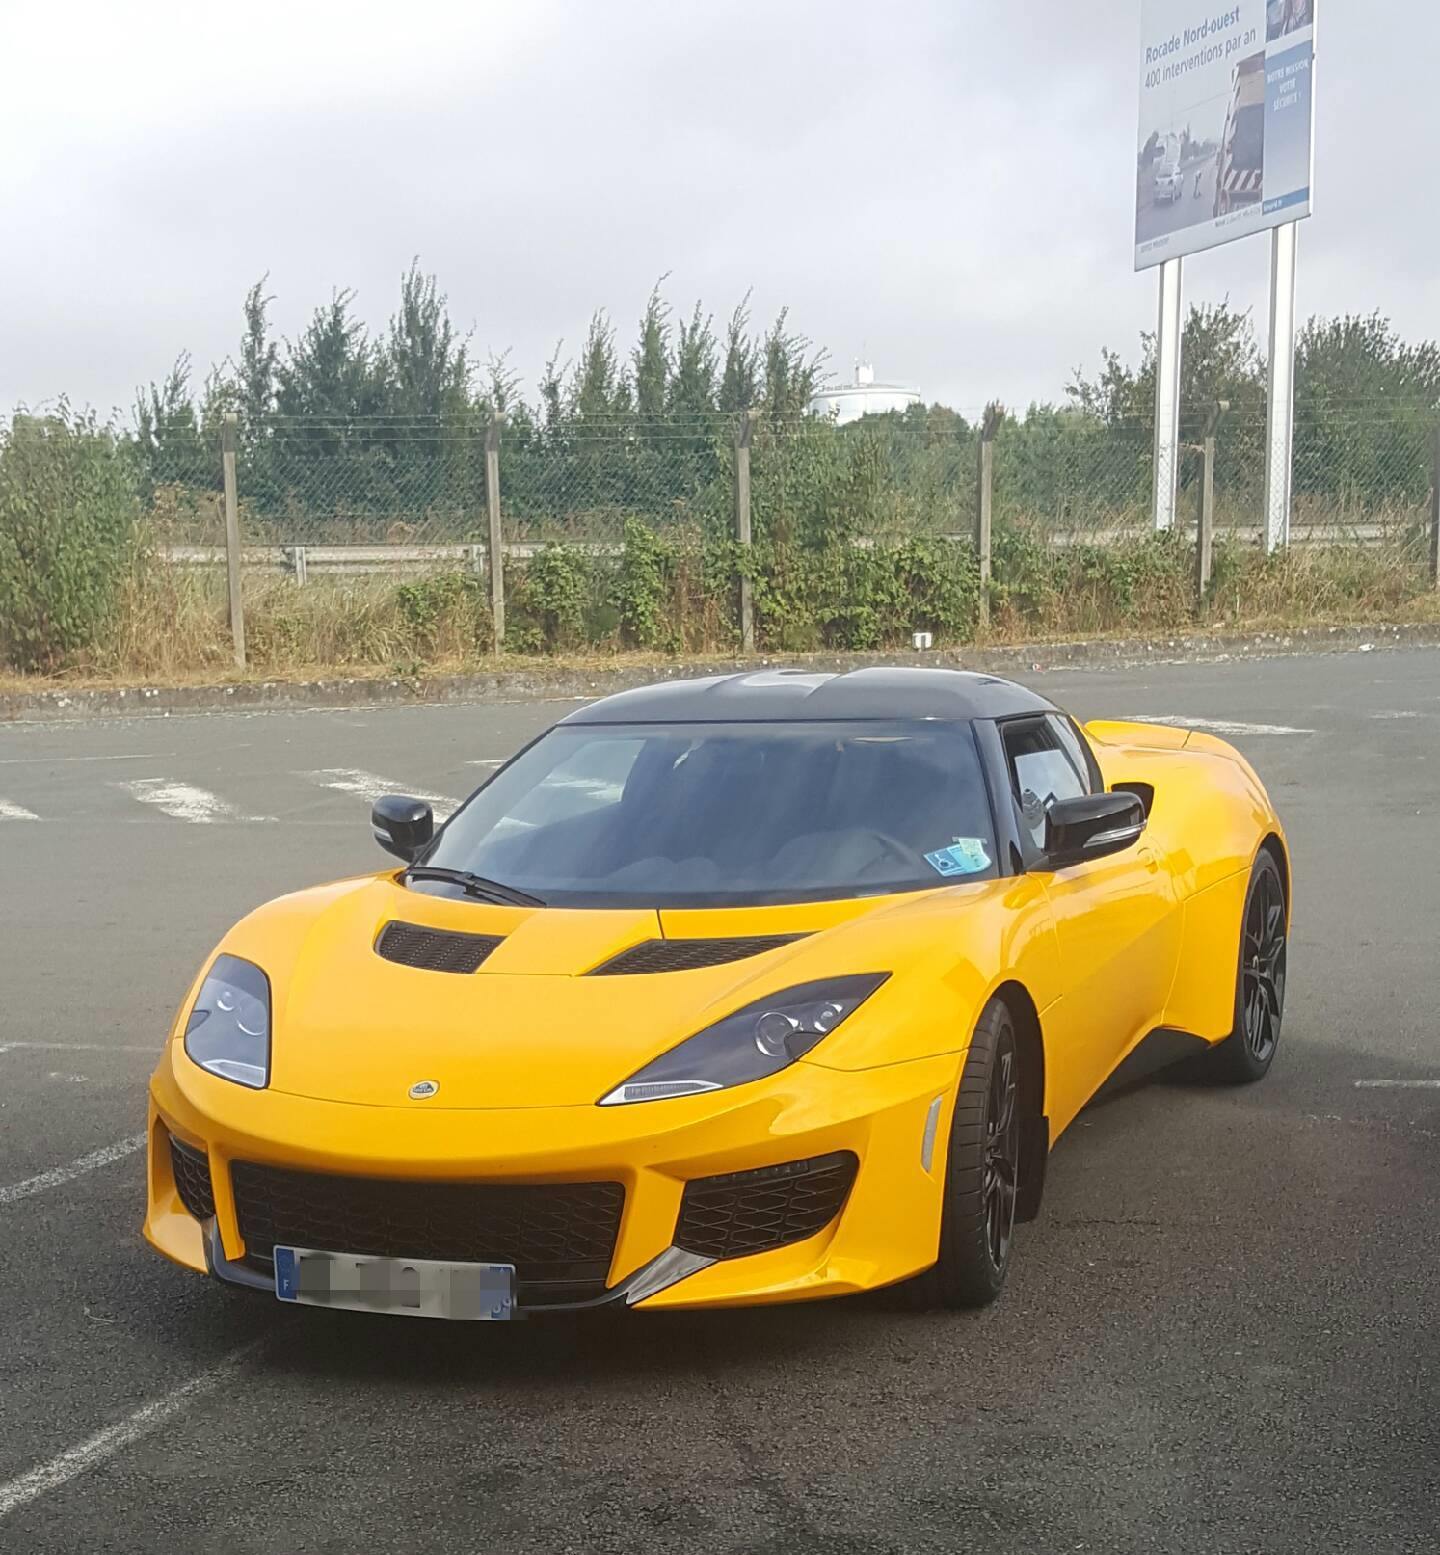 Lotus Evora Top jaune sur le parking de Carter-Cash Capinghem